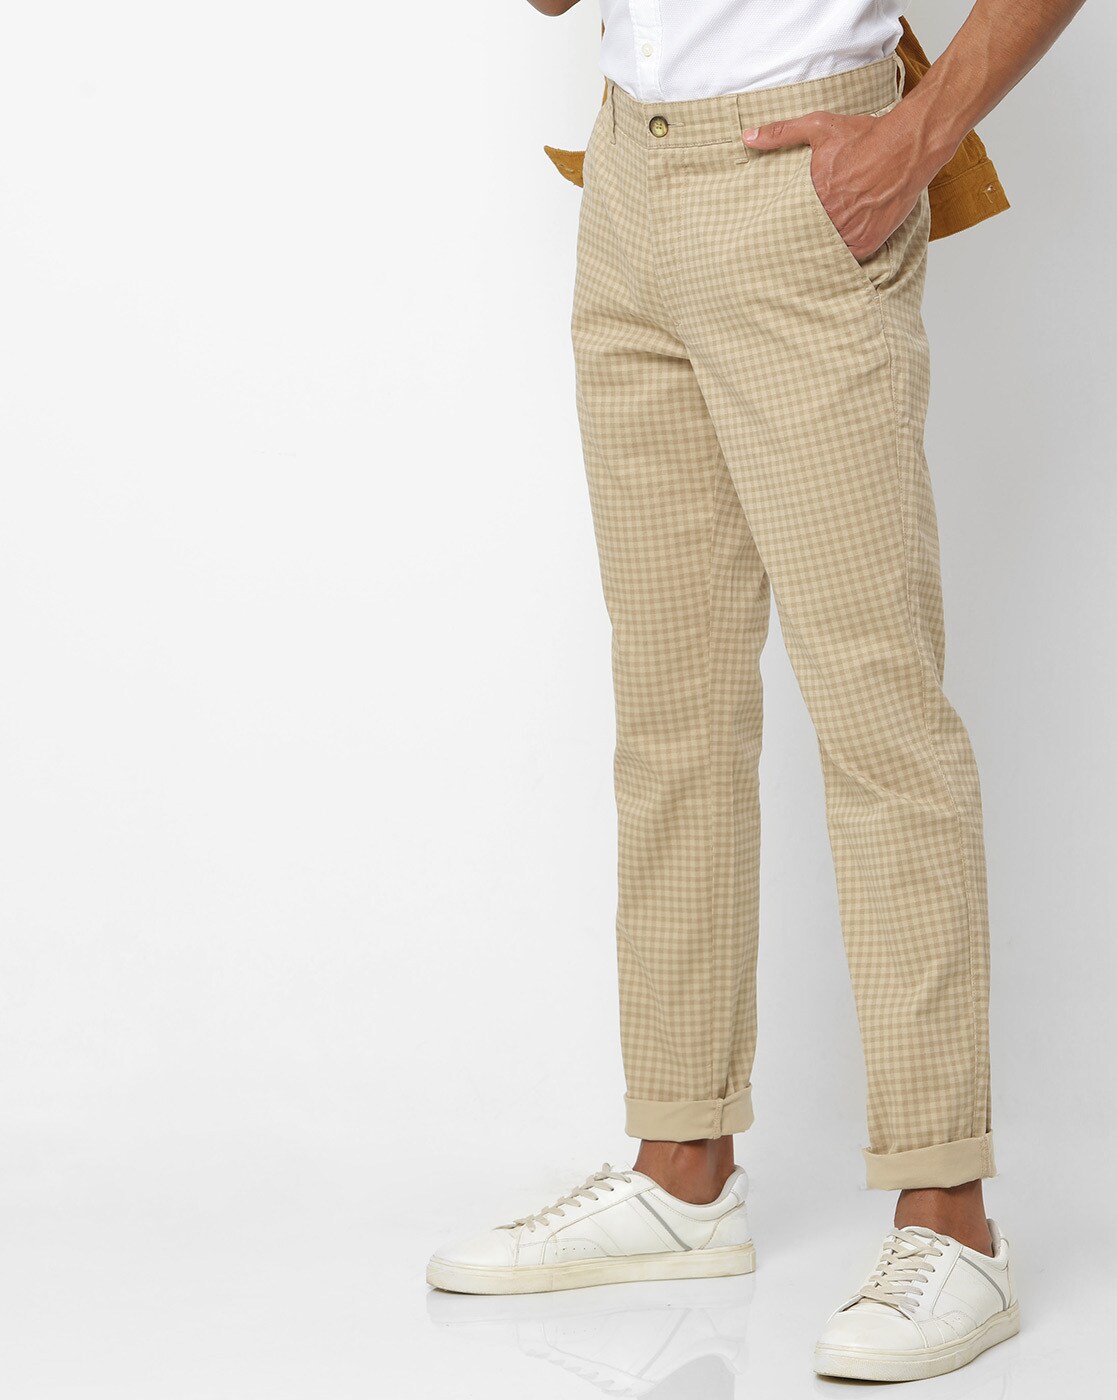 French Connection suit trousers in grey check брюки V68191139Цвет Серый  Размер W34 купить по выгодной цене от 4935 руб в интернетмагазине  marketlitemfcom с доставкой